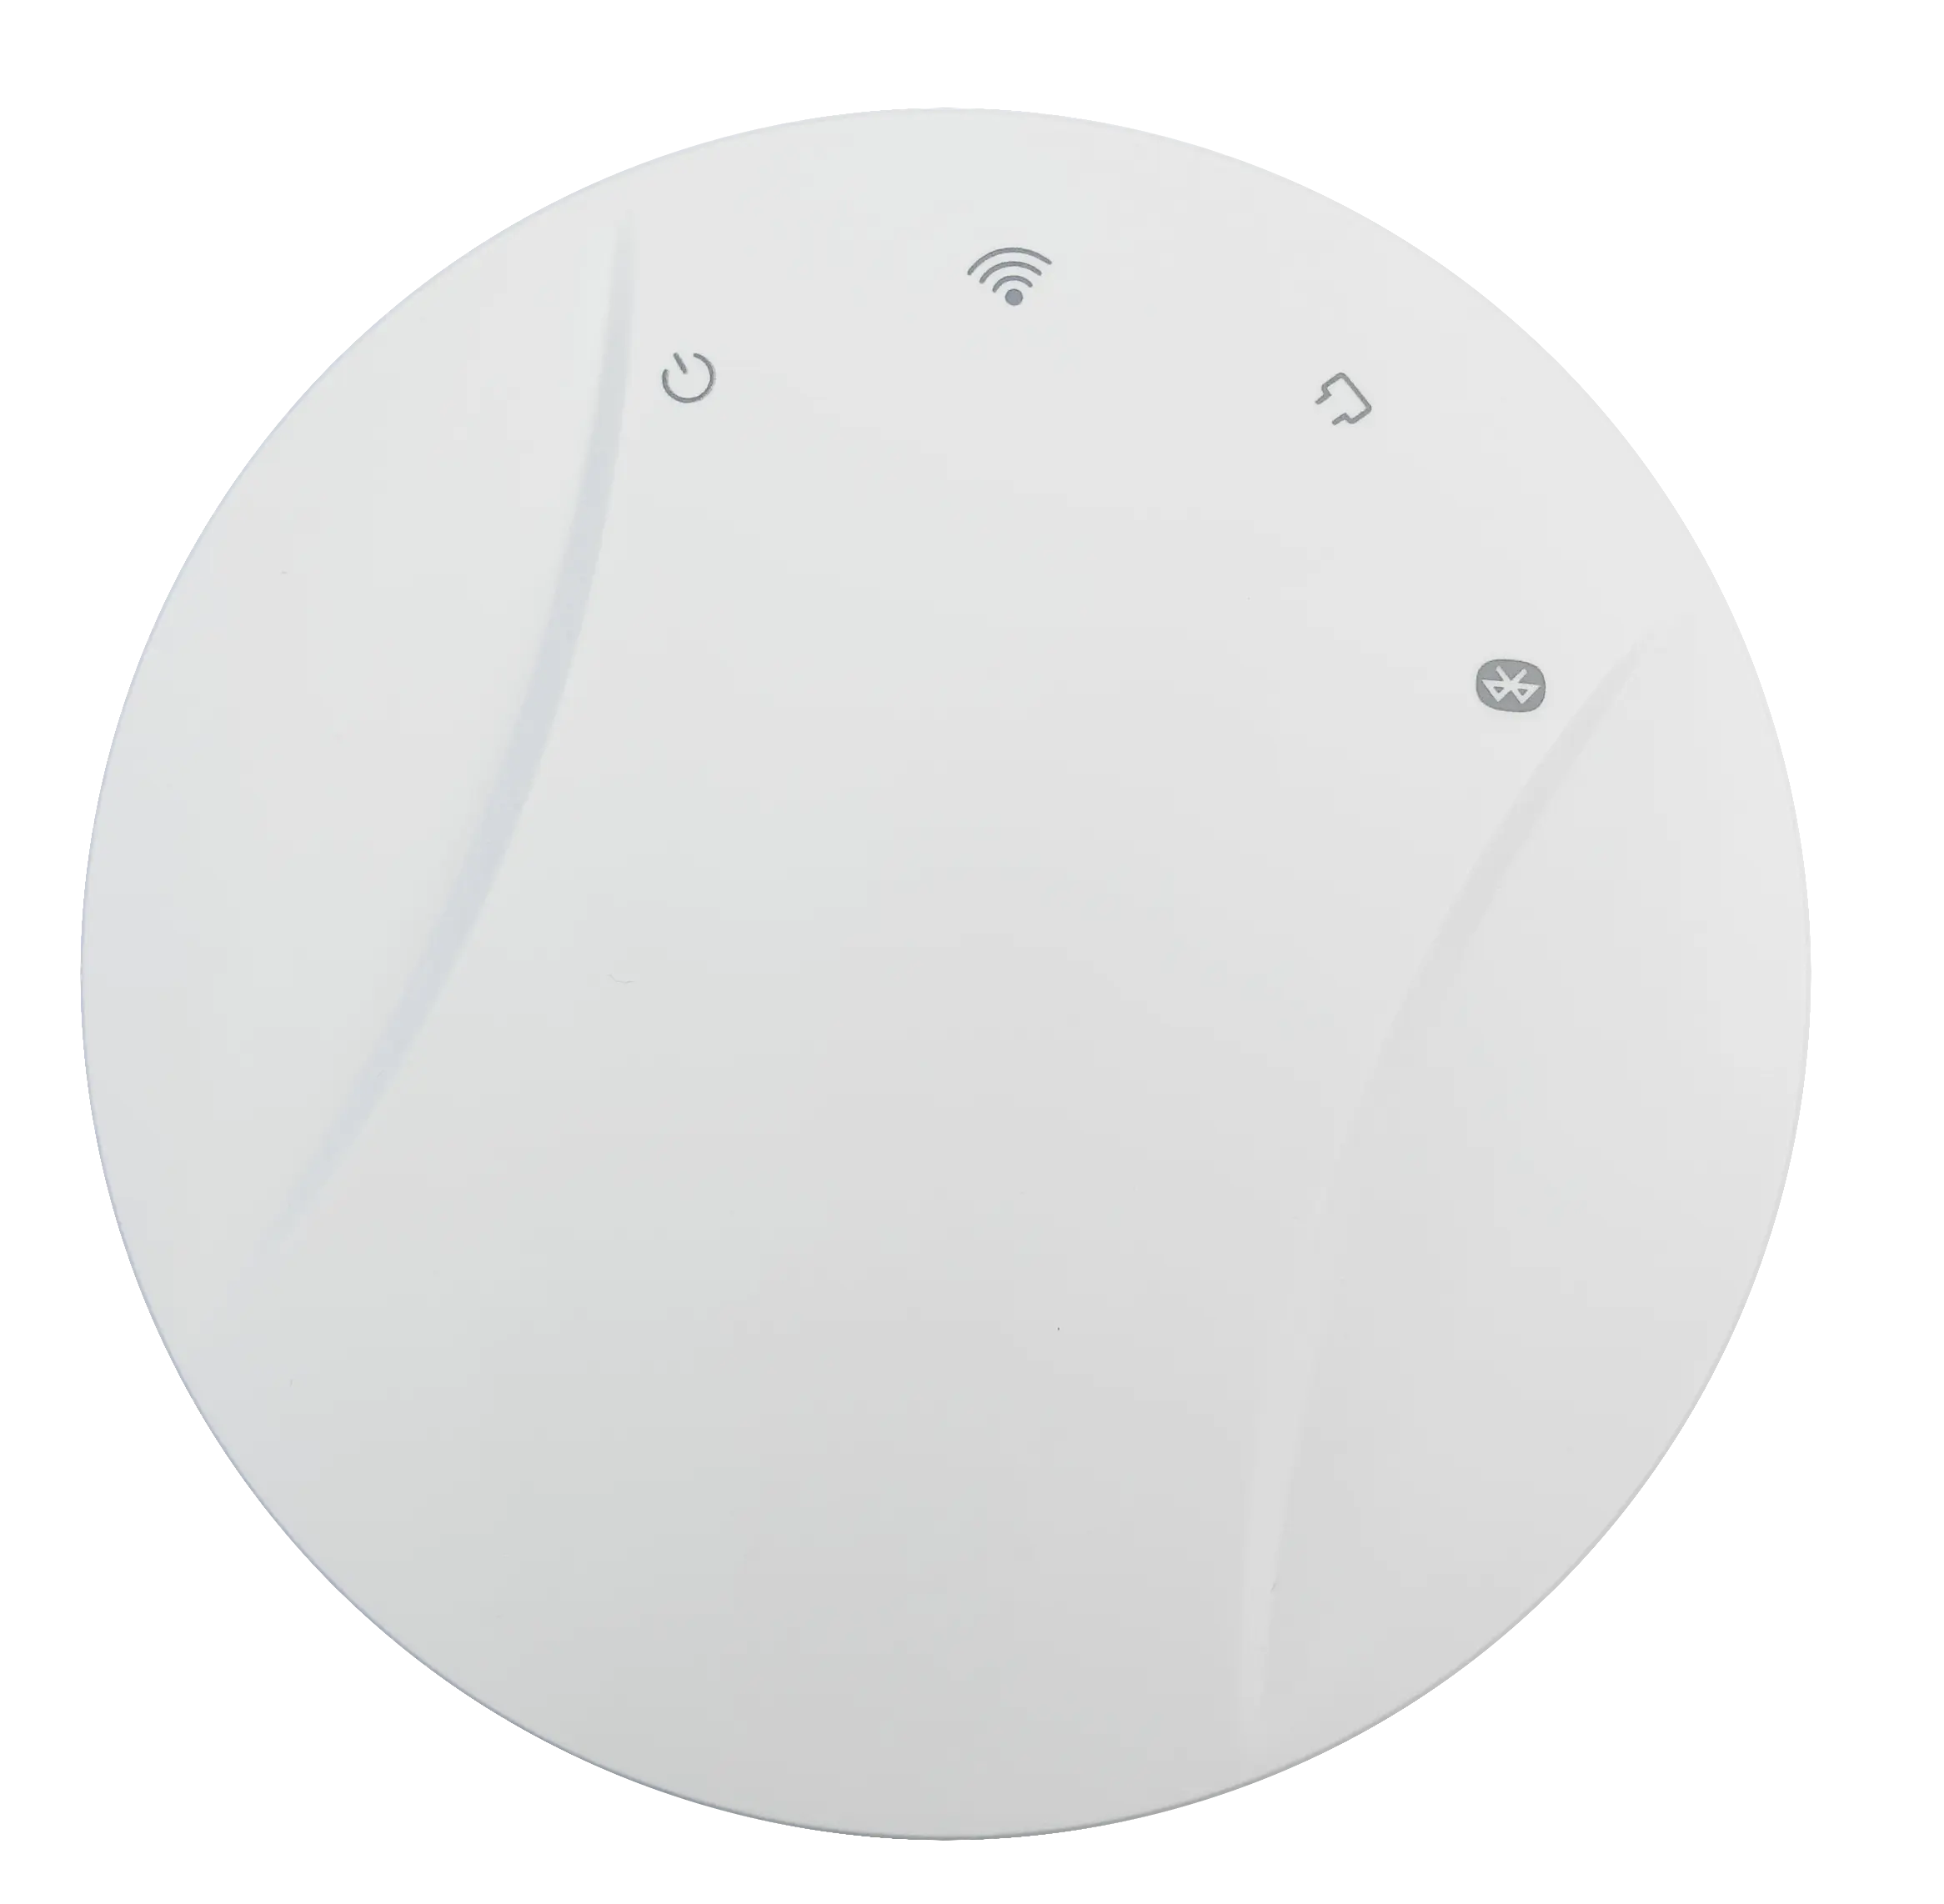 TD05A smart home wifi bluetooth iot gateway device machine per il monitoraggio delle risorse